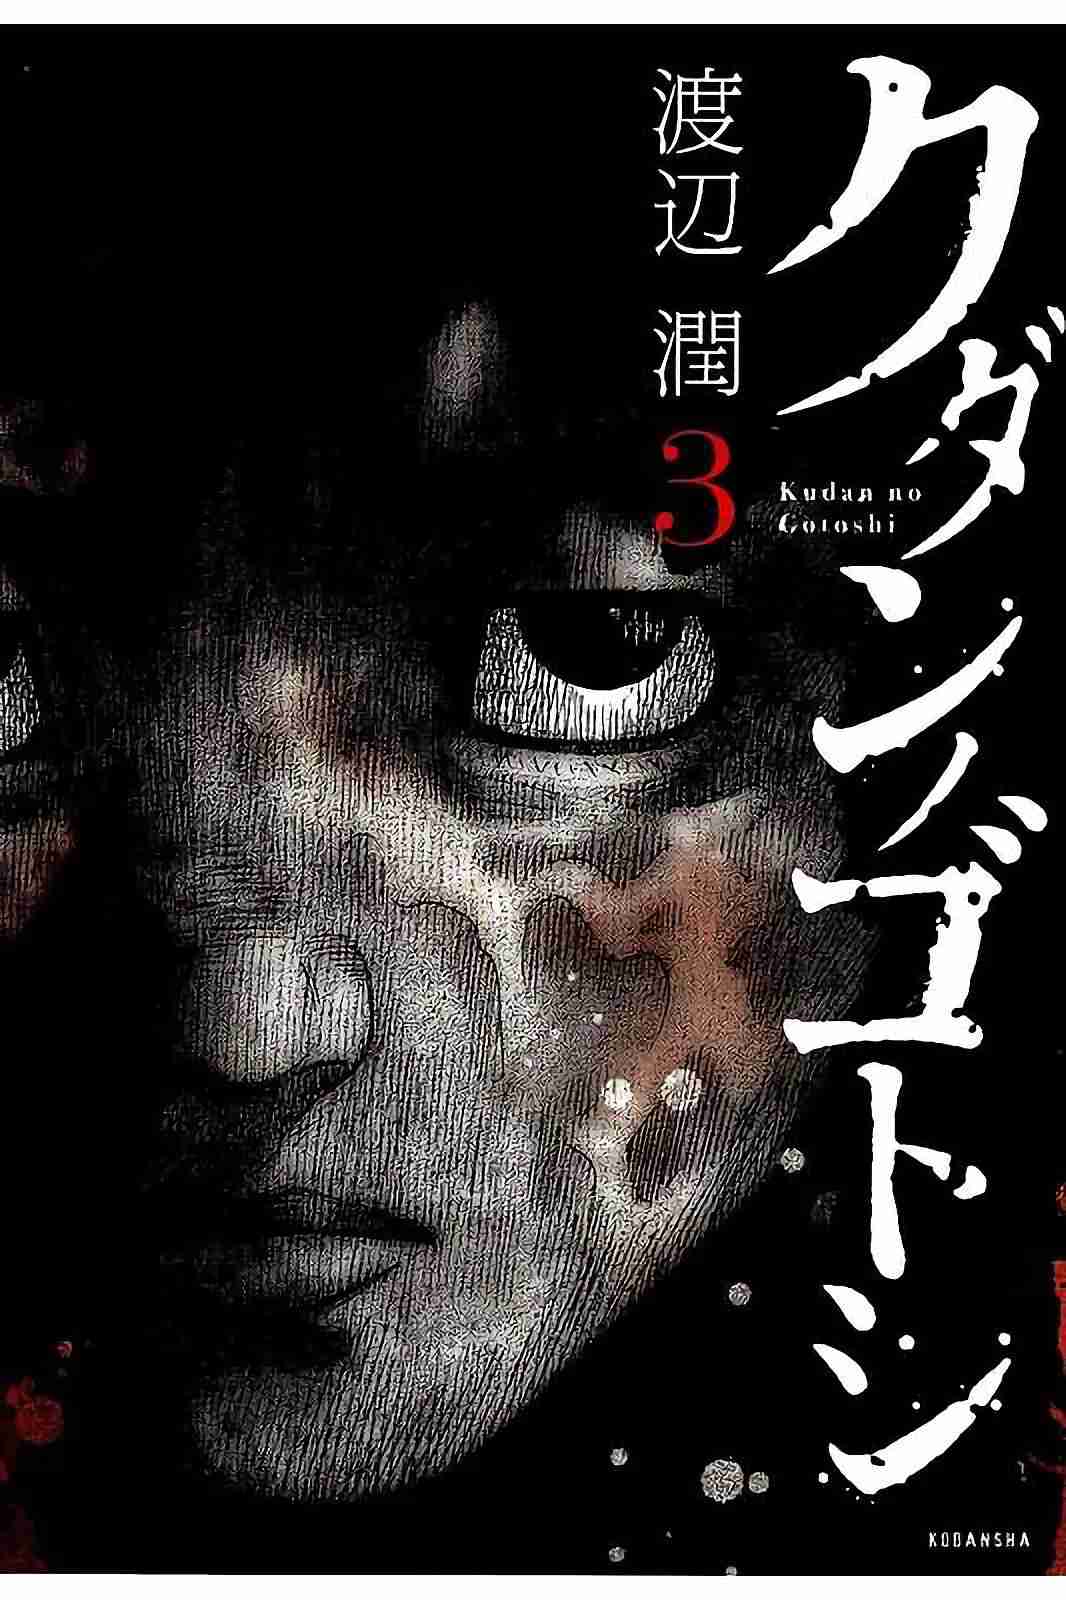 Kudan no Gotoshi Vol. 3 Ch. 25 Shinji Fujisawa < Part 10 > Mai Kawai < Part 4 >